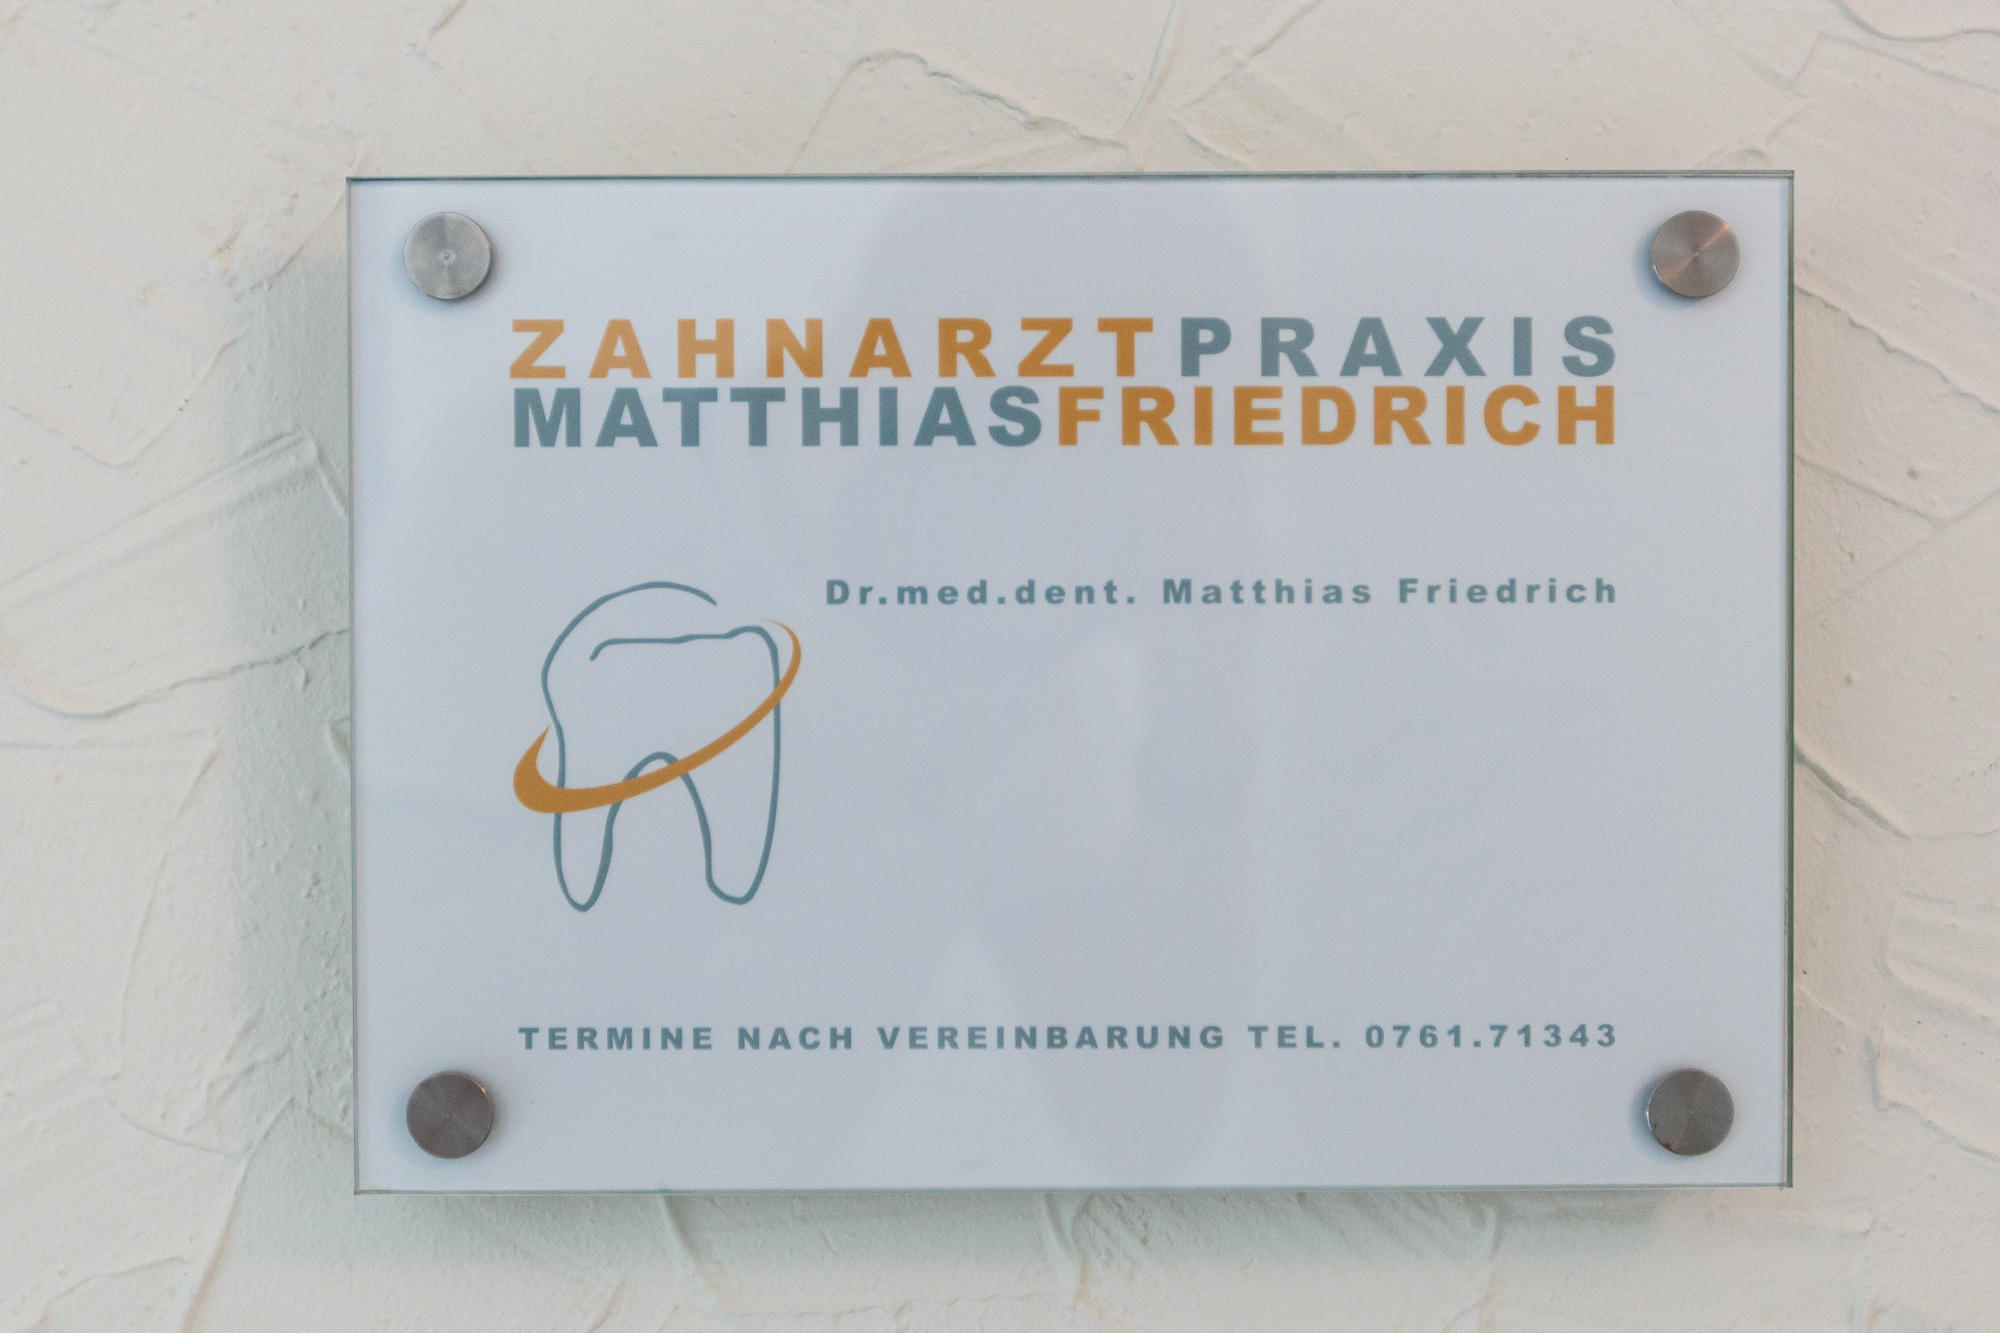 Zahnarztpraxis Dr. Matthias Friedrich, Schwarzwaldstraße 146 in Freiburg